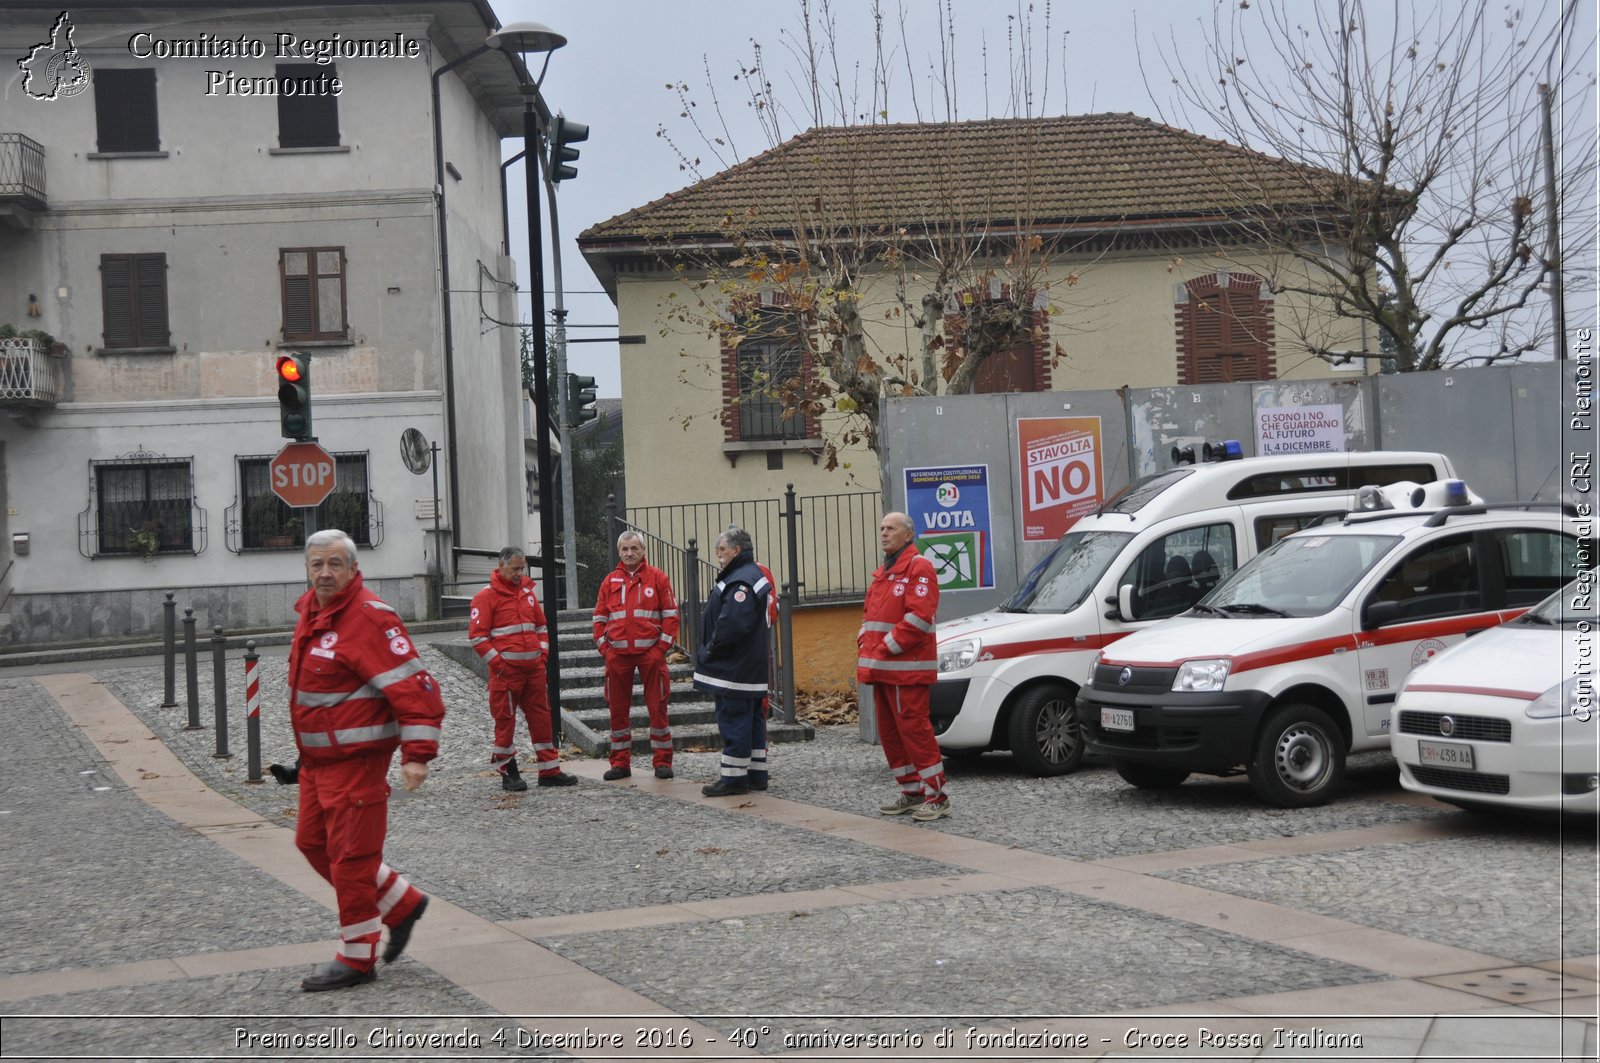 Premosello Chiovenda 4 Dicembre 2016 - 40 anniversario di fondazione - Croce Rossa Italiana- Comitato Regionale del Piemonte